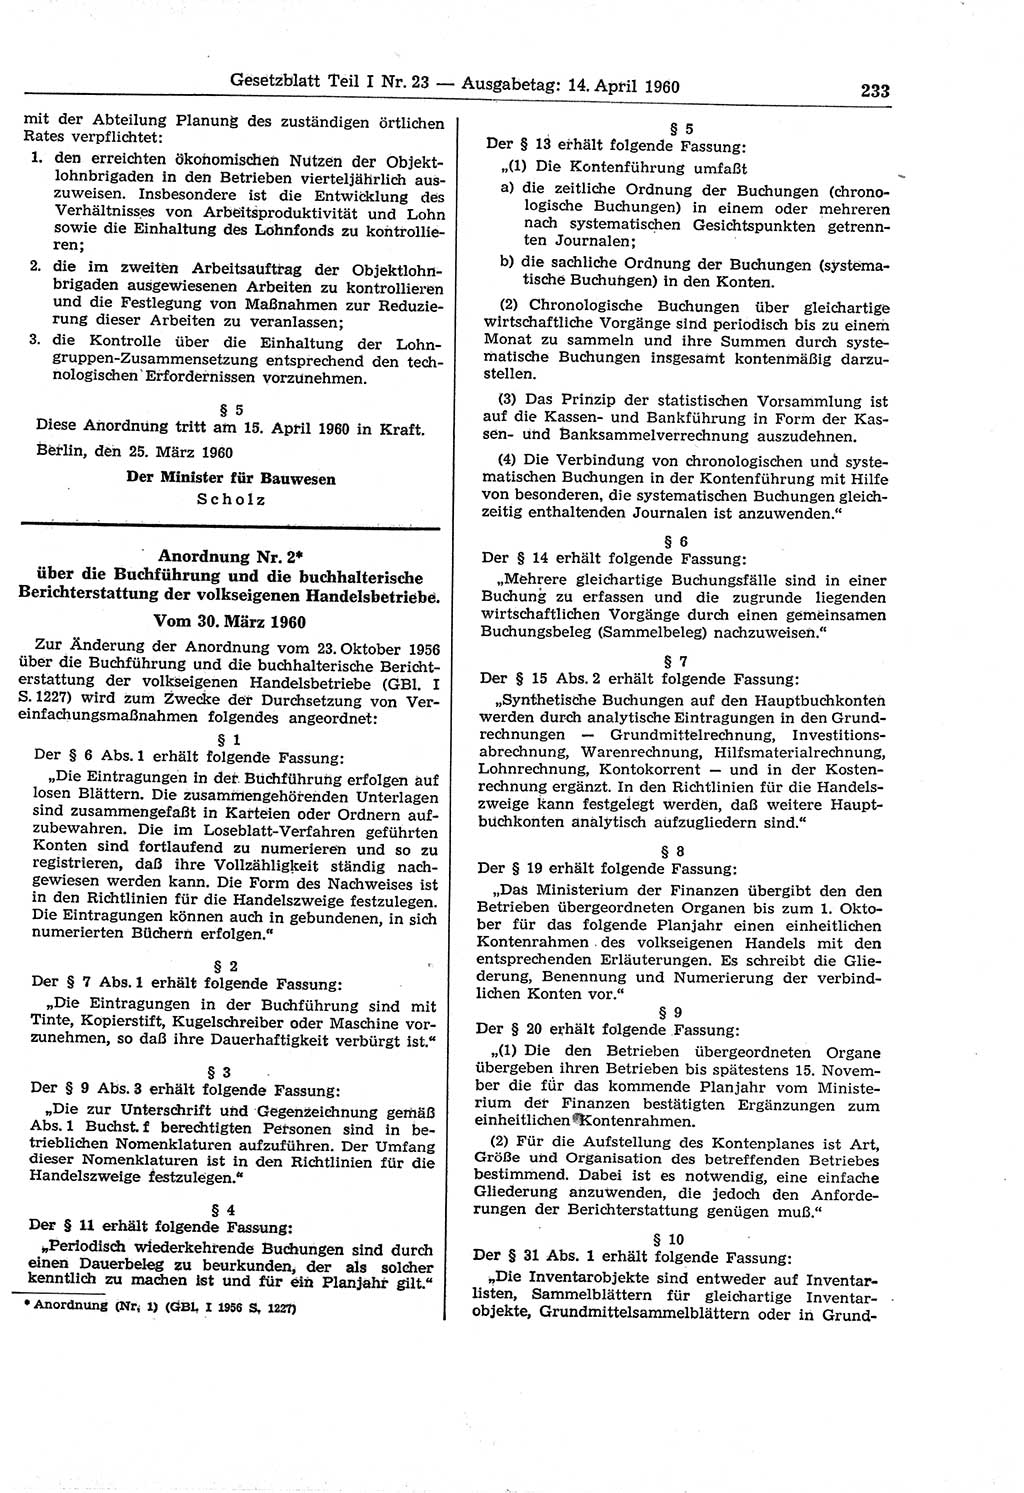 Gesetzblatt (GBl.) der Deutschen Demokratischen Republik (DDR) Teil Ⅰ 1960, Seite 233 (GBl. DDR Ⅰ 1960, S. 233)